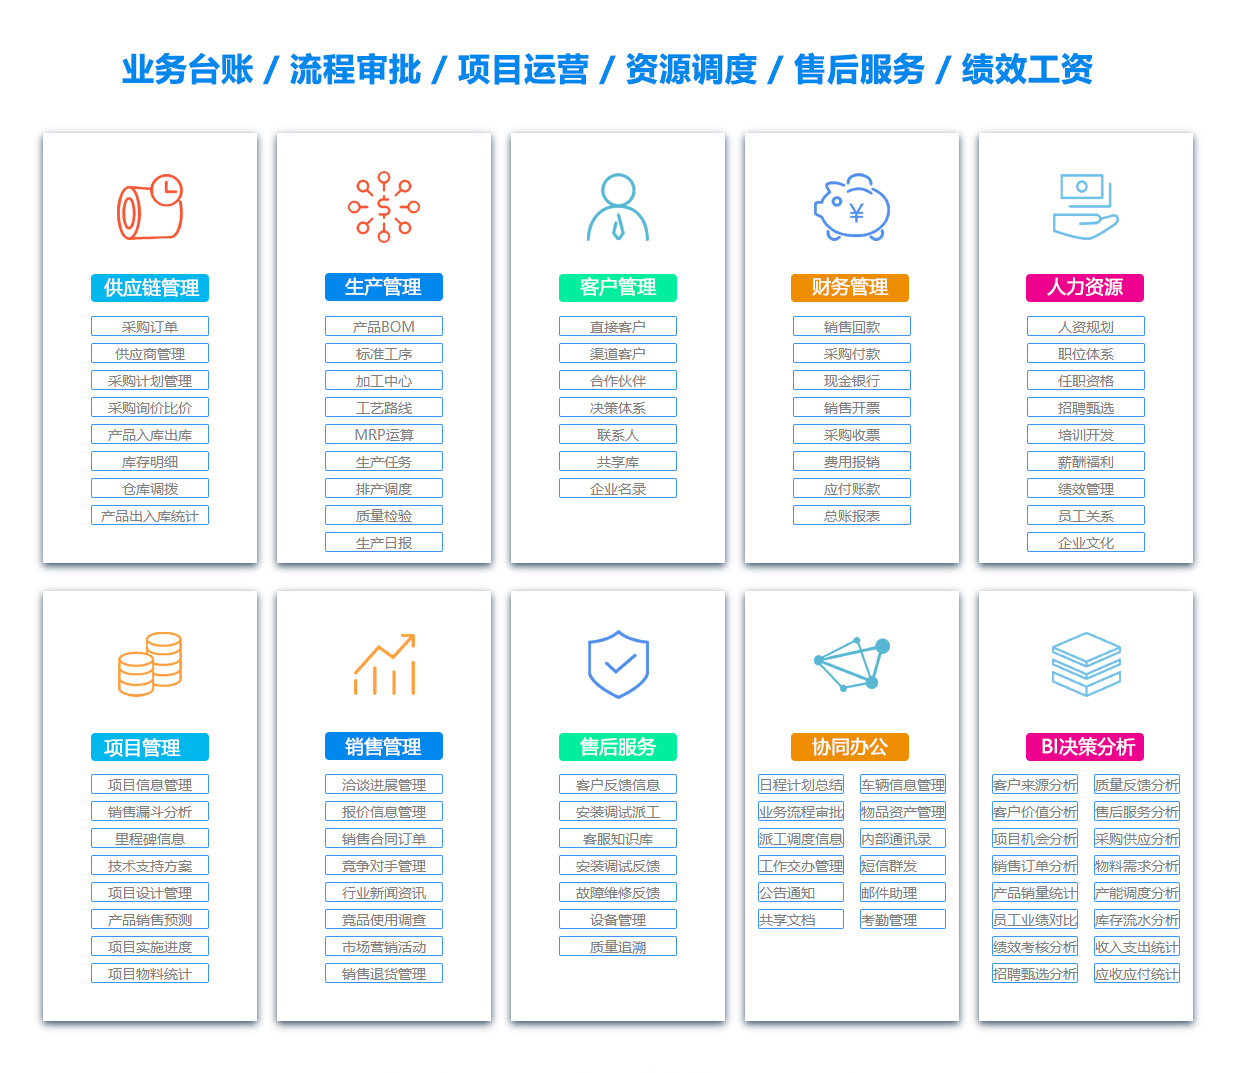 重庆BI:商业智能软件